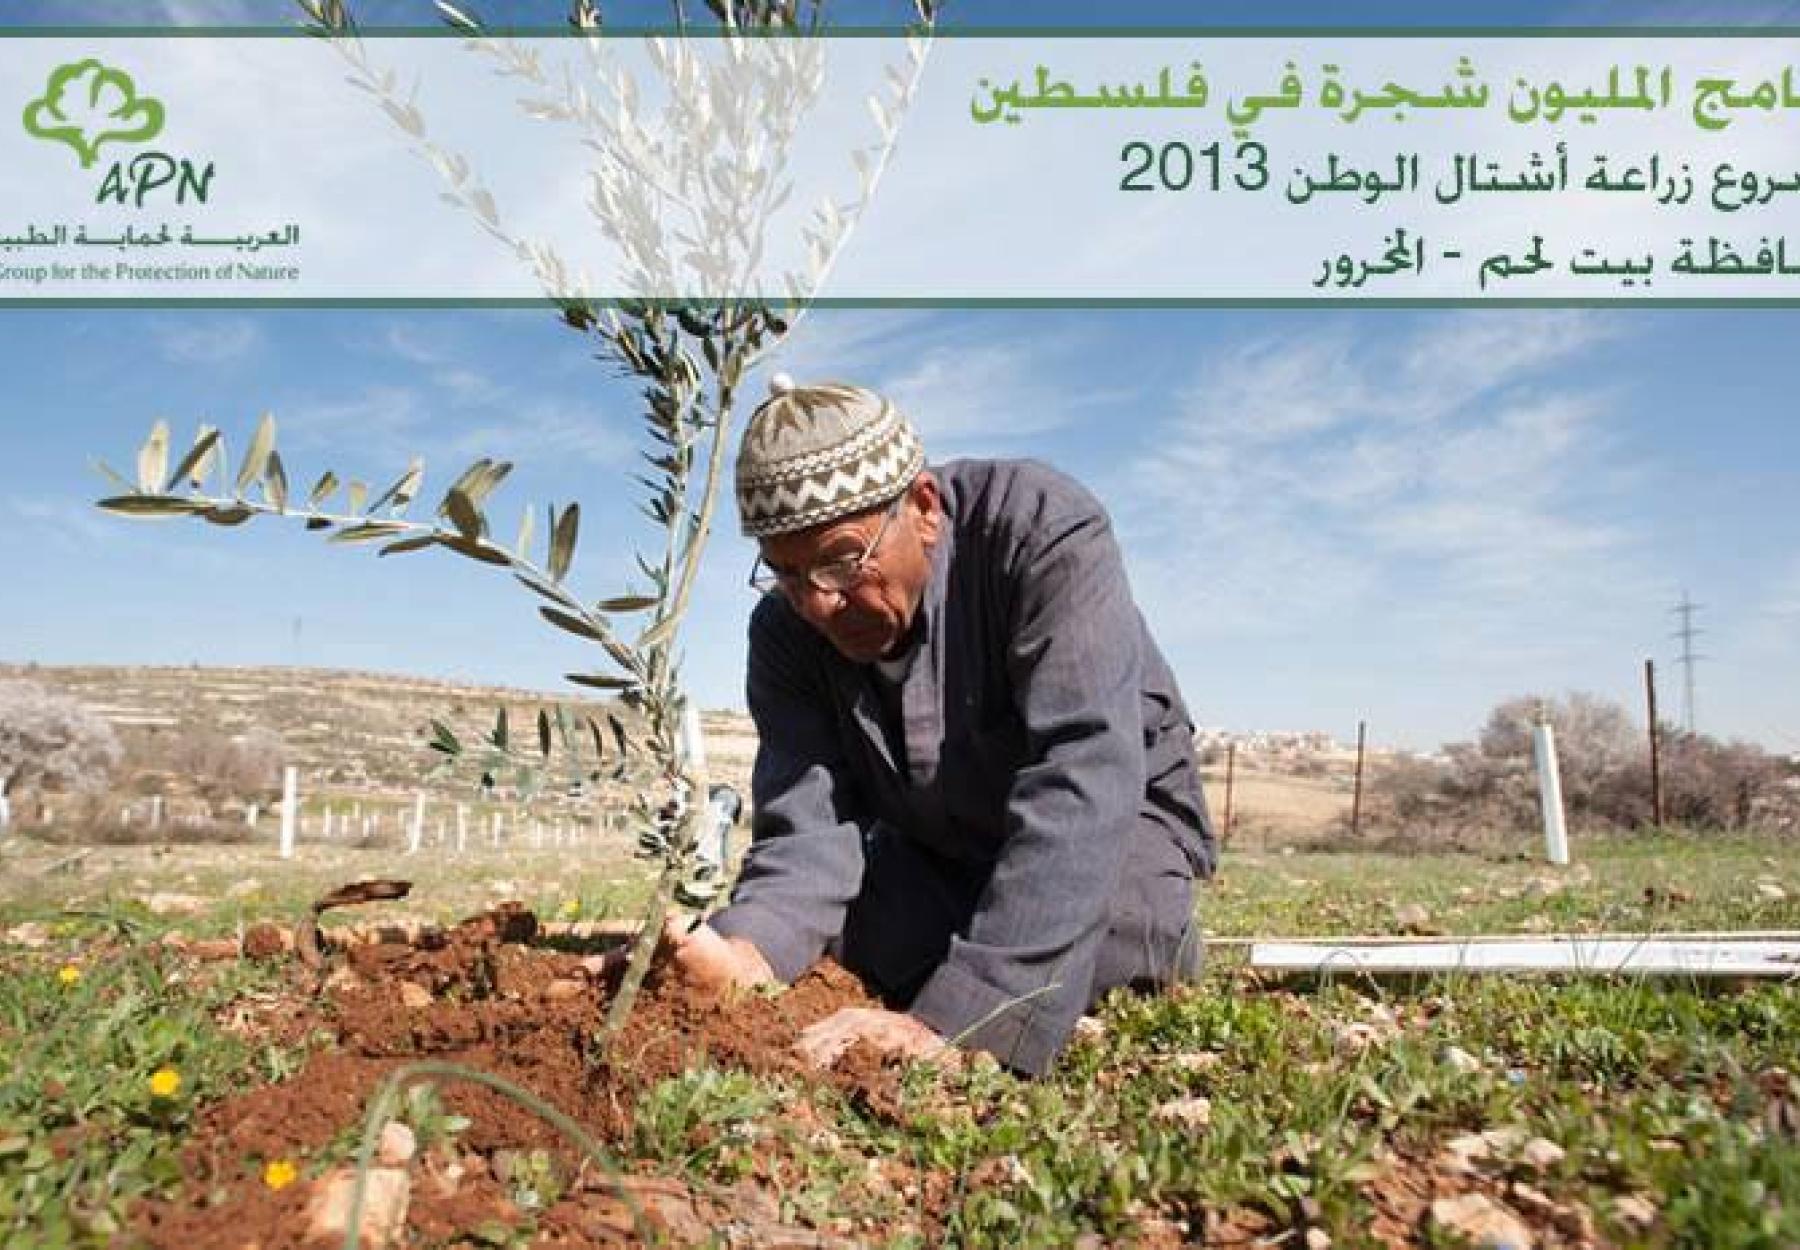 Million Tree Campaign in Palestine